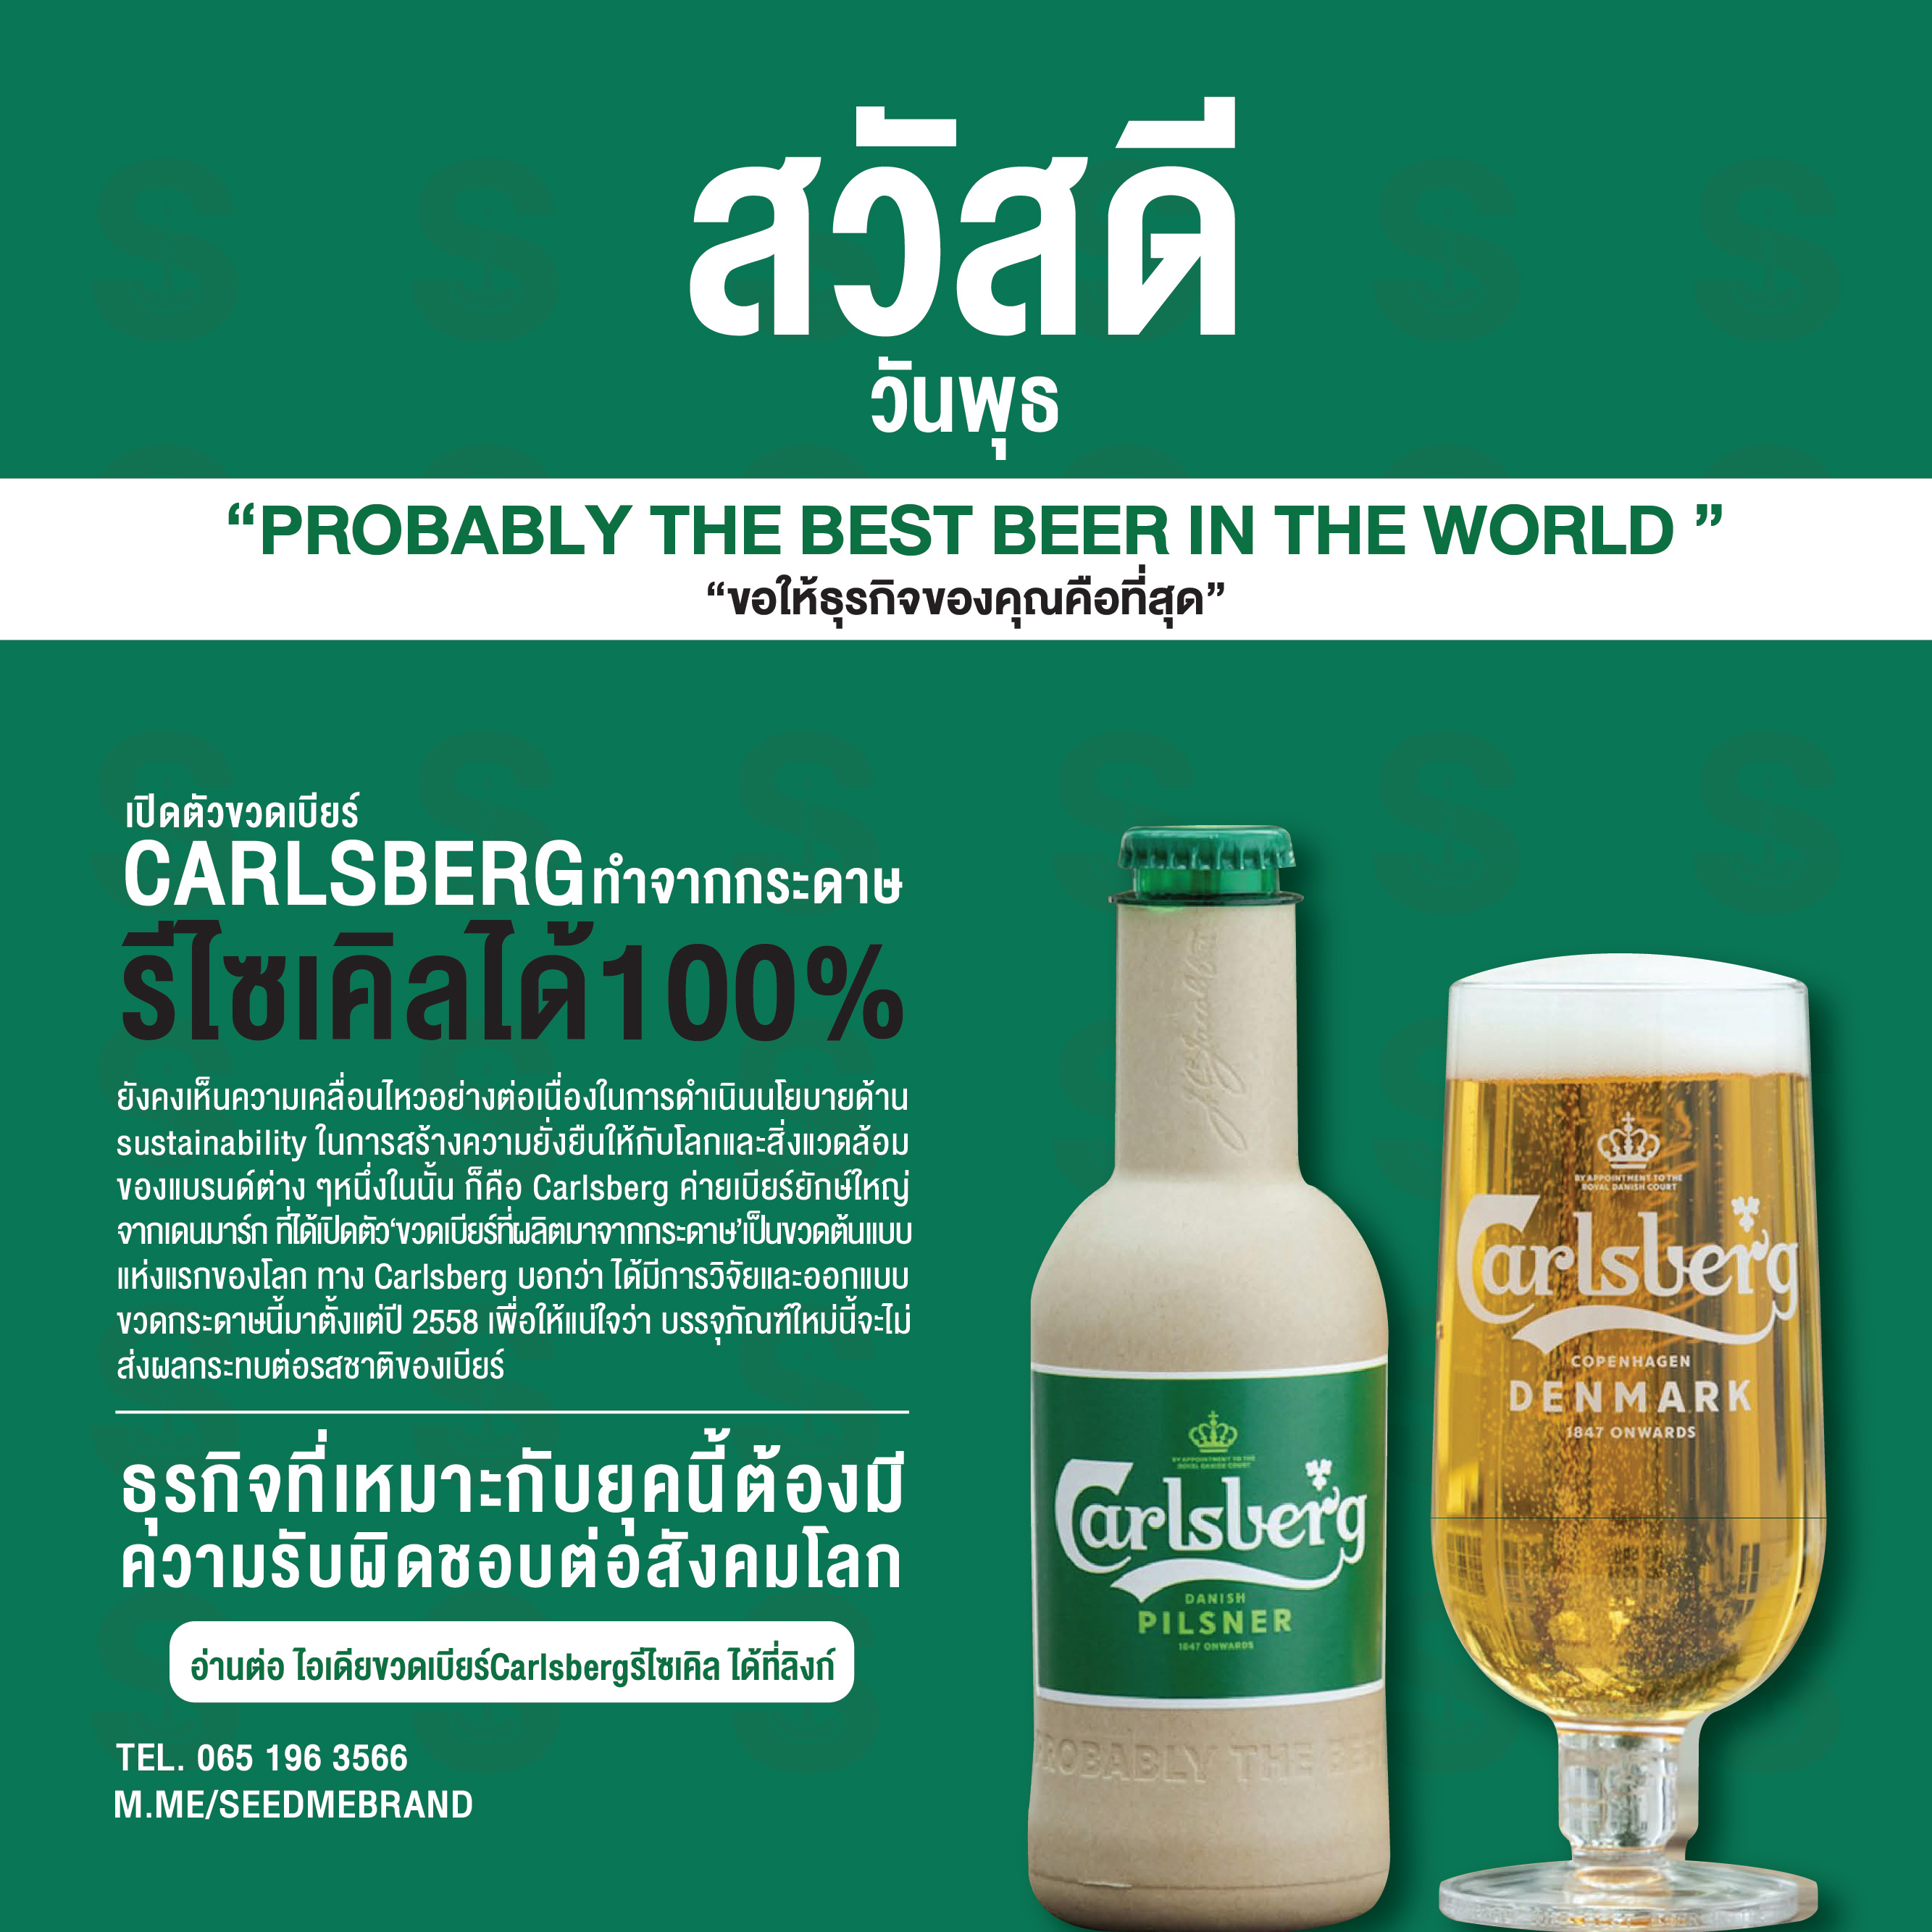 Carlsberg เปิดตัวขวดเบียร์ทำจากกระดาษสุดเจ๋ง รีไซเคิลได้ 100%